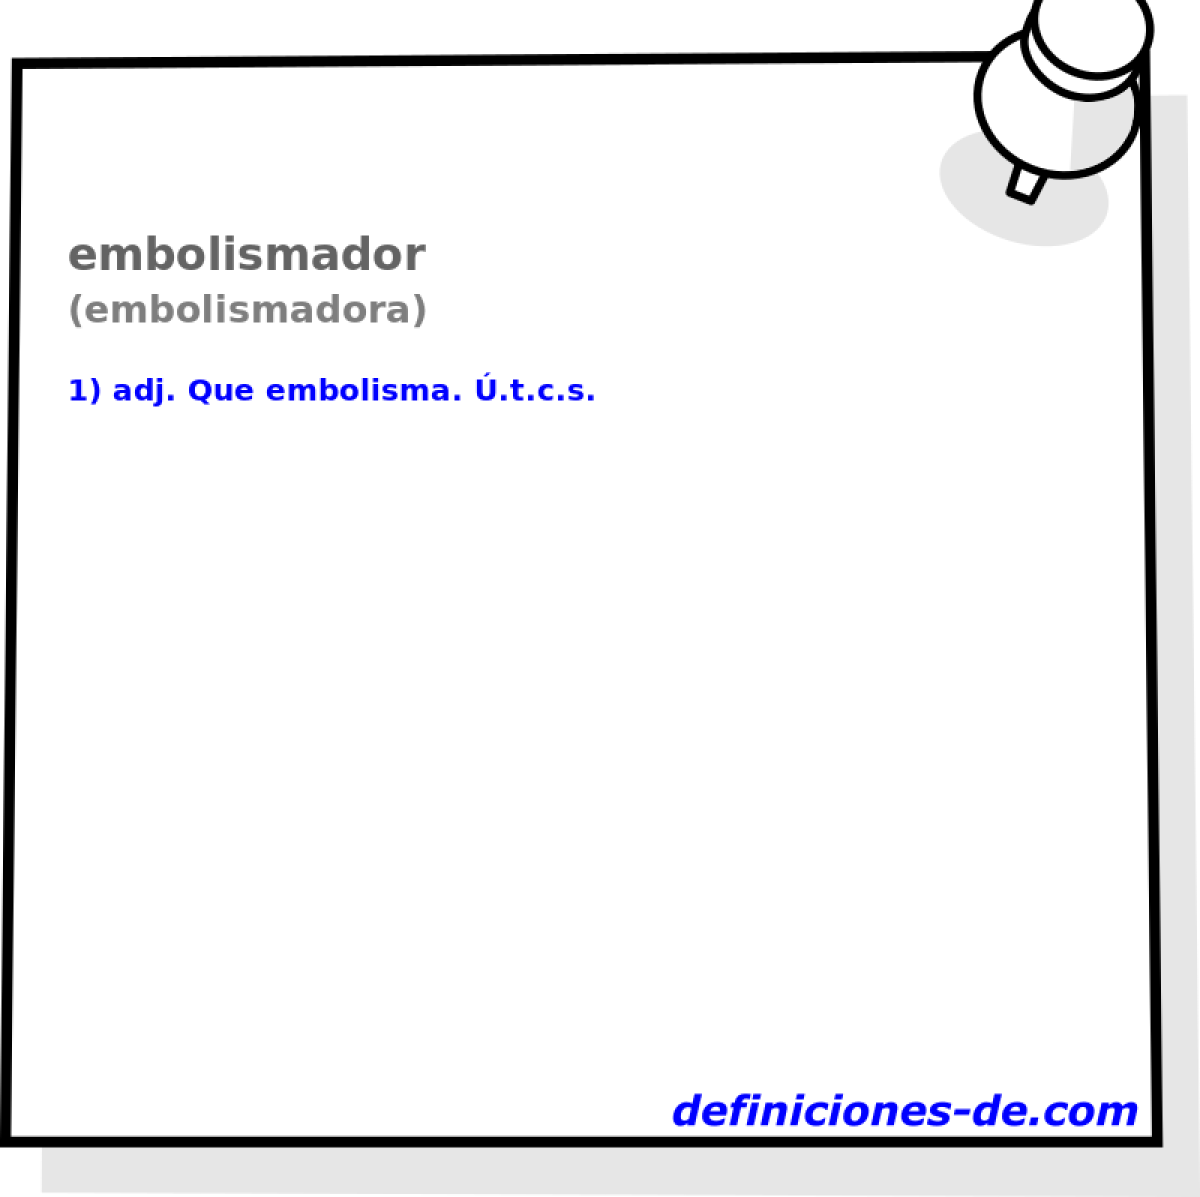 embolismador (embolismadora)